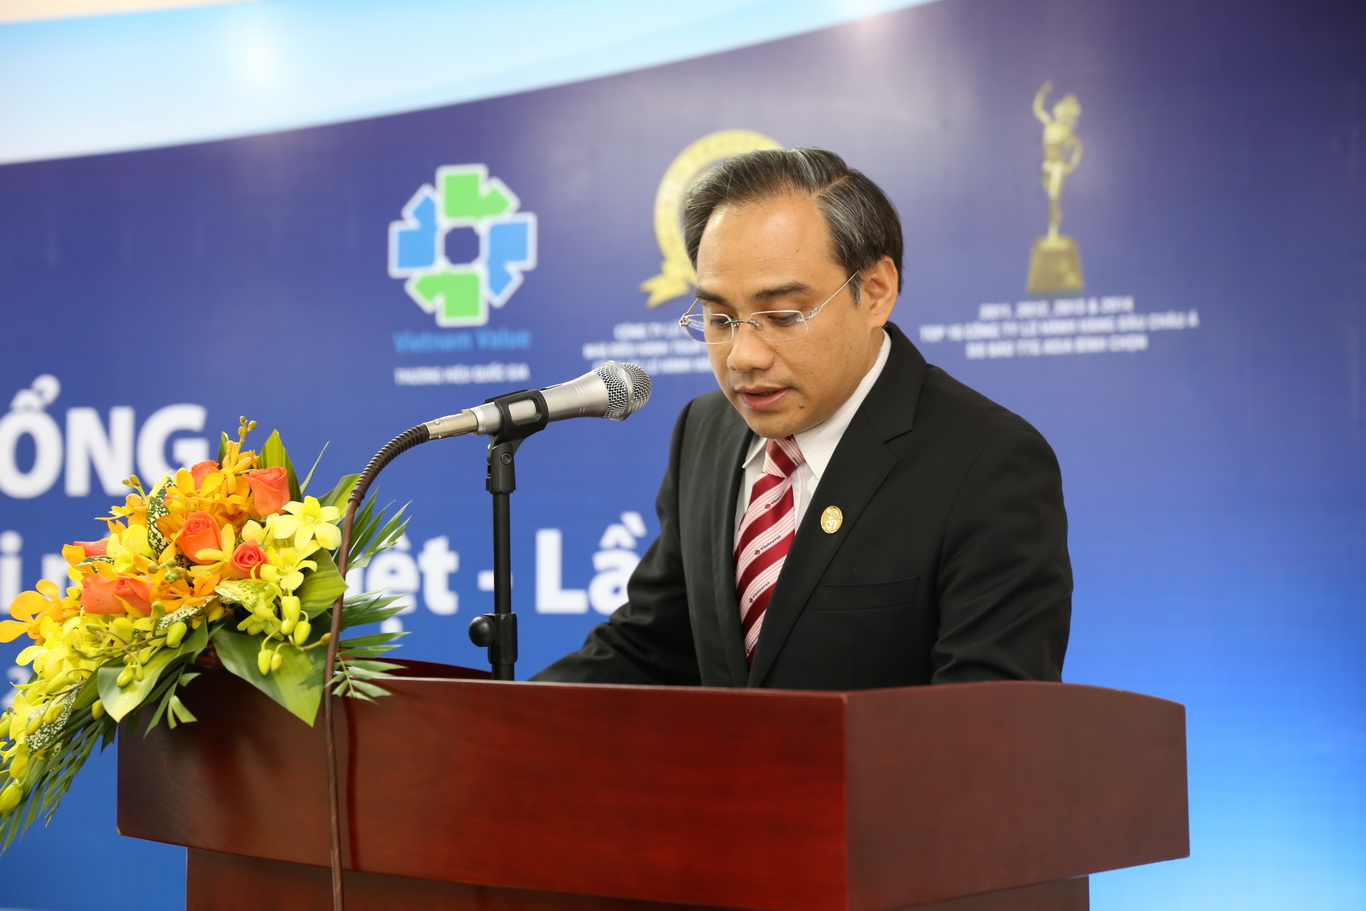 Lễ trao học bổng "Vietravel đồng hành cùng tài năng Việt" lần thứ III năm 2014